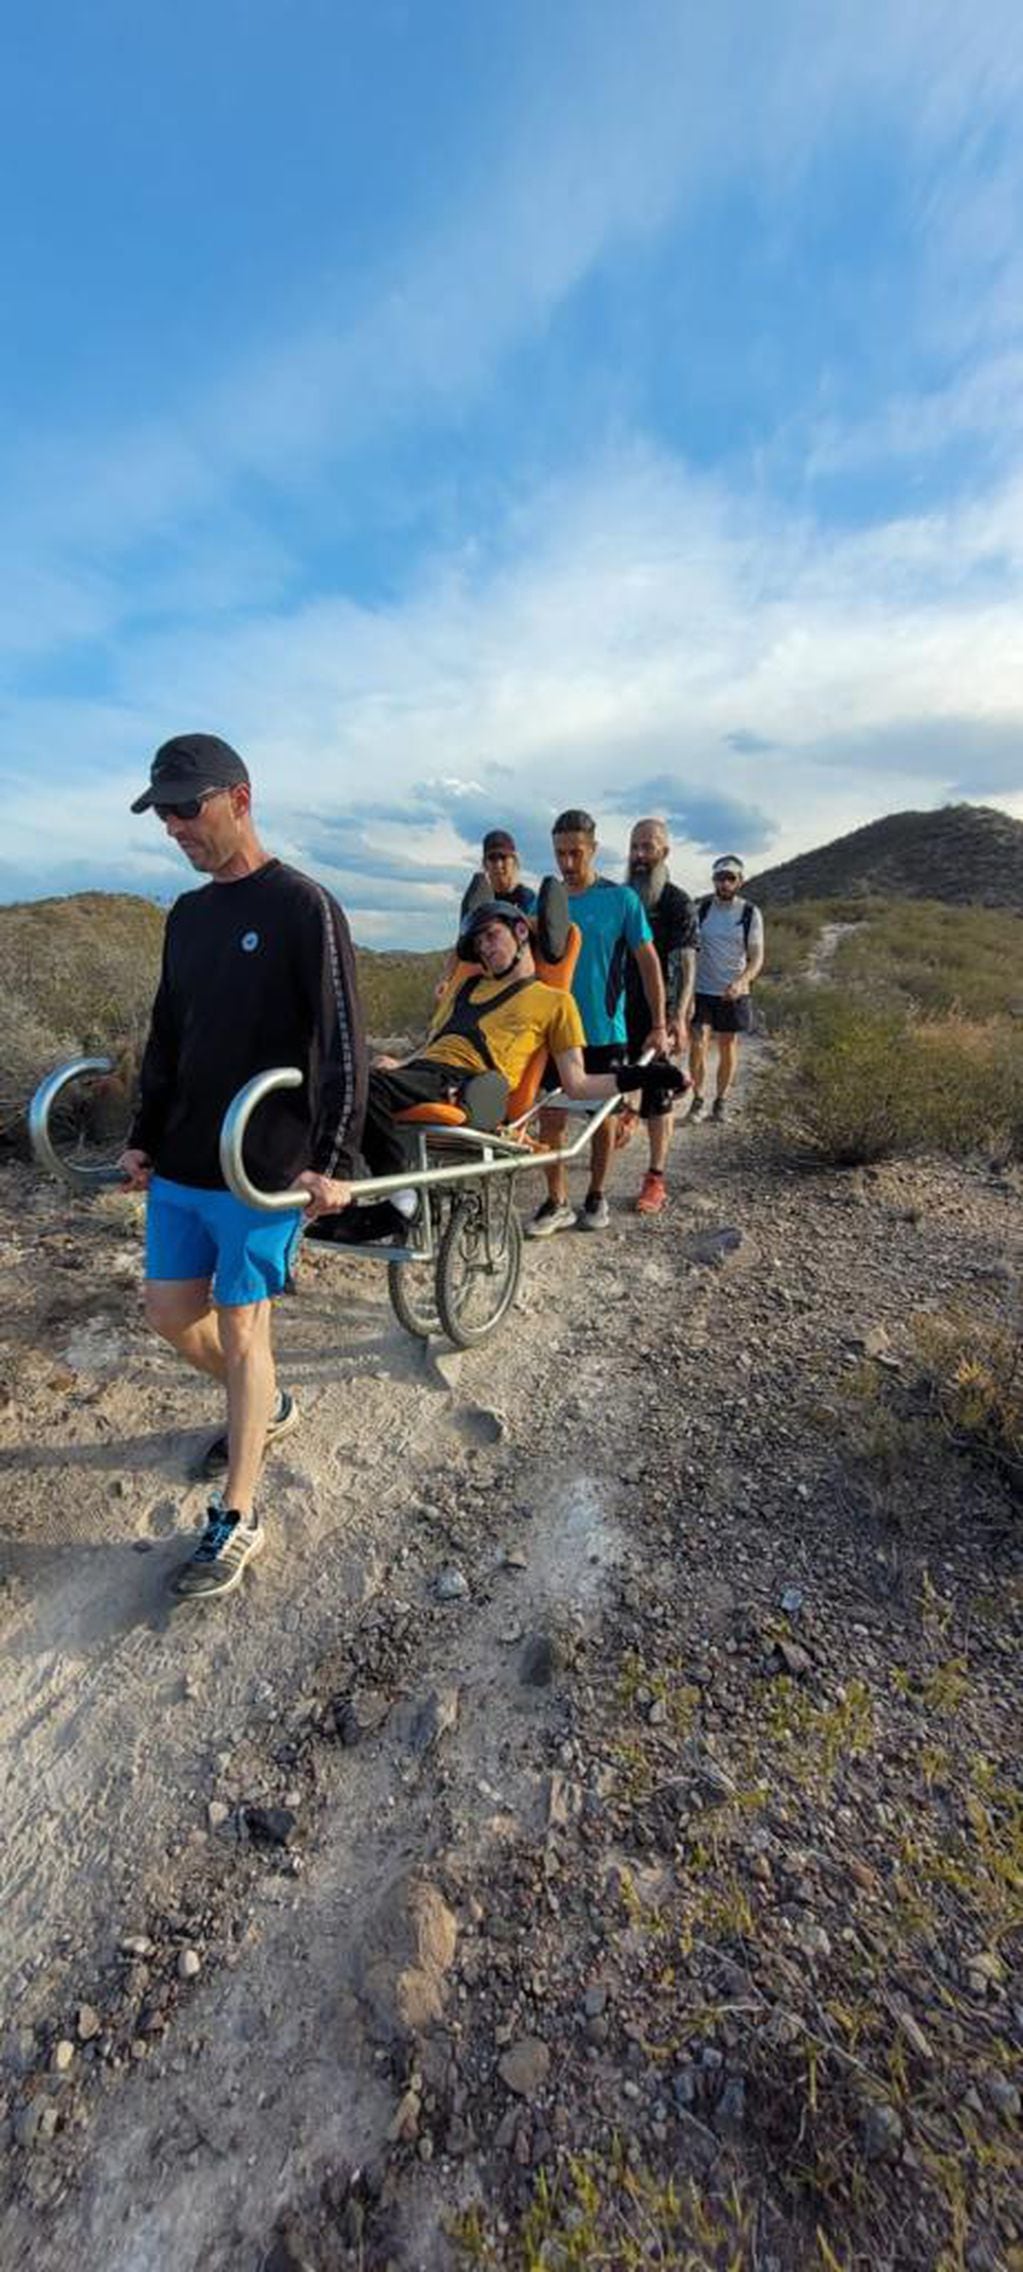 Diseñaron una silla de ruedas adaptada para que un joven pueda disfrutar de los cerros mendocinos. Foto: Gentileza Adrián Pavesi y Fernanda Jara